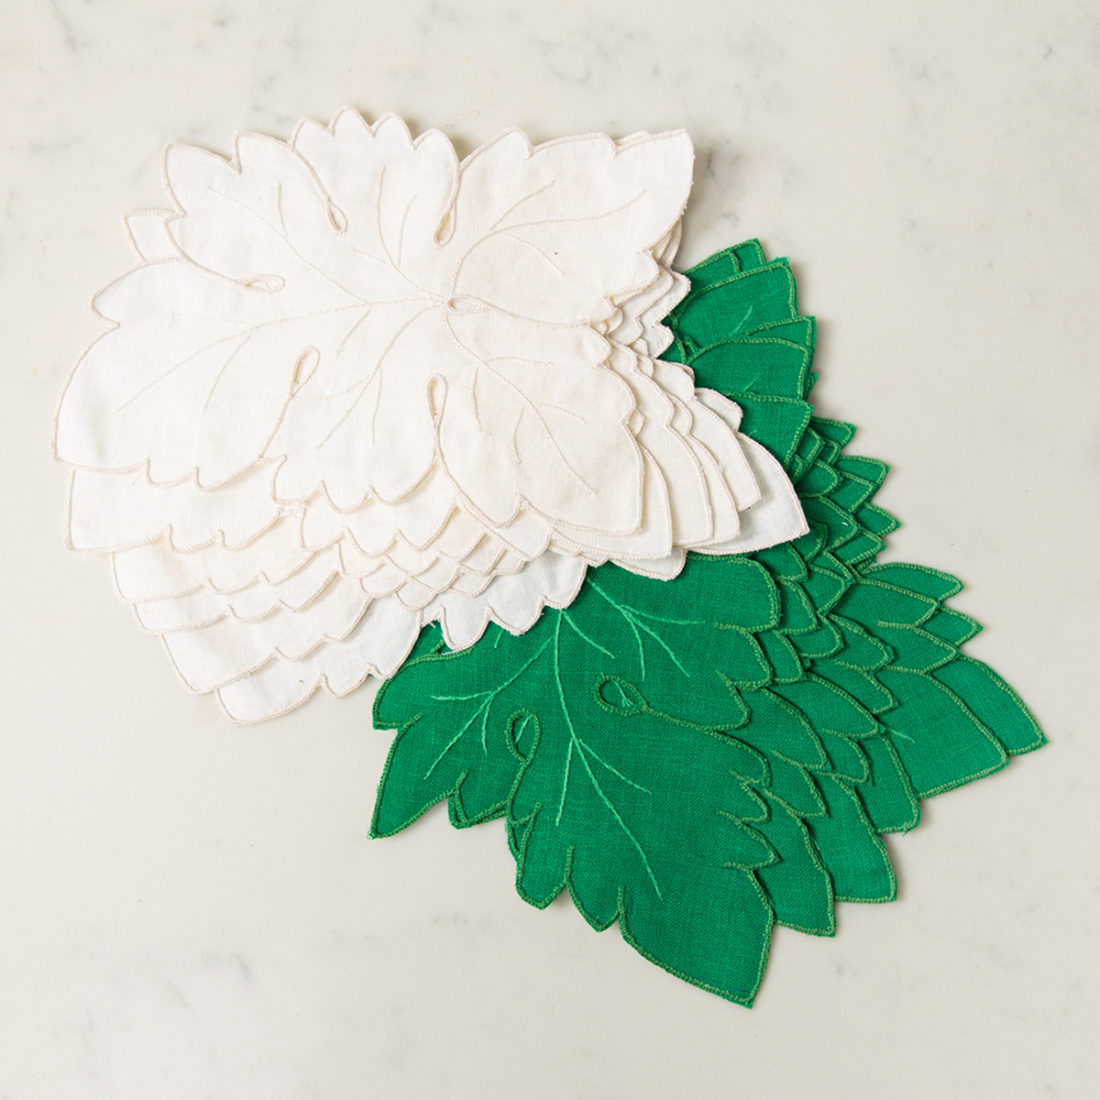 Cutworth Leaf Napkins by Gerbrend Creations